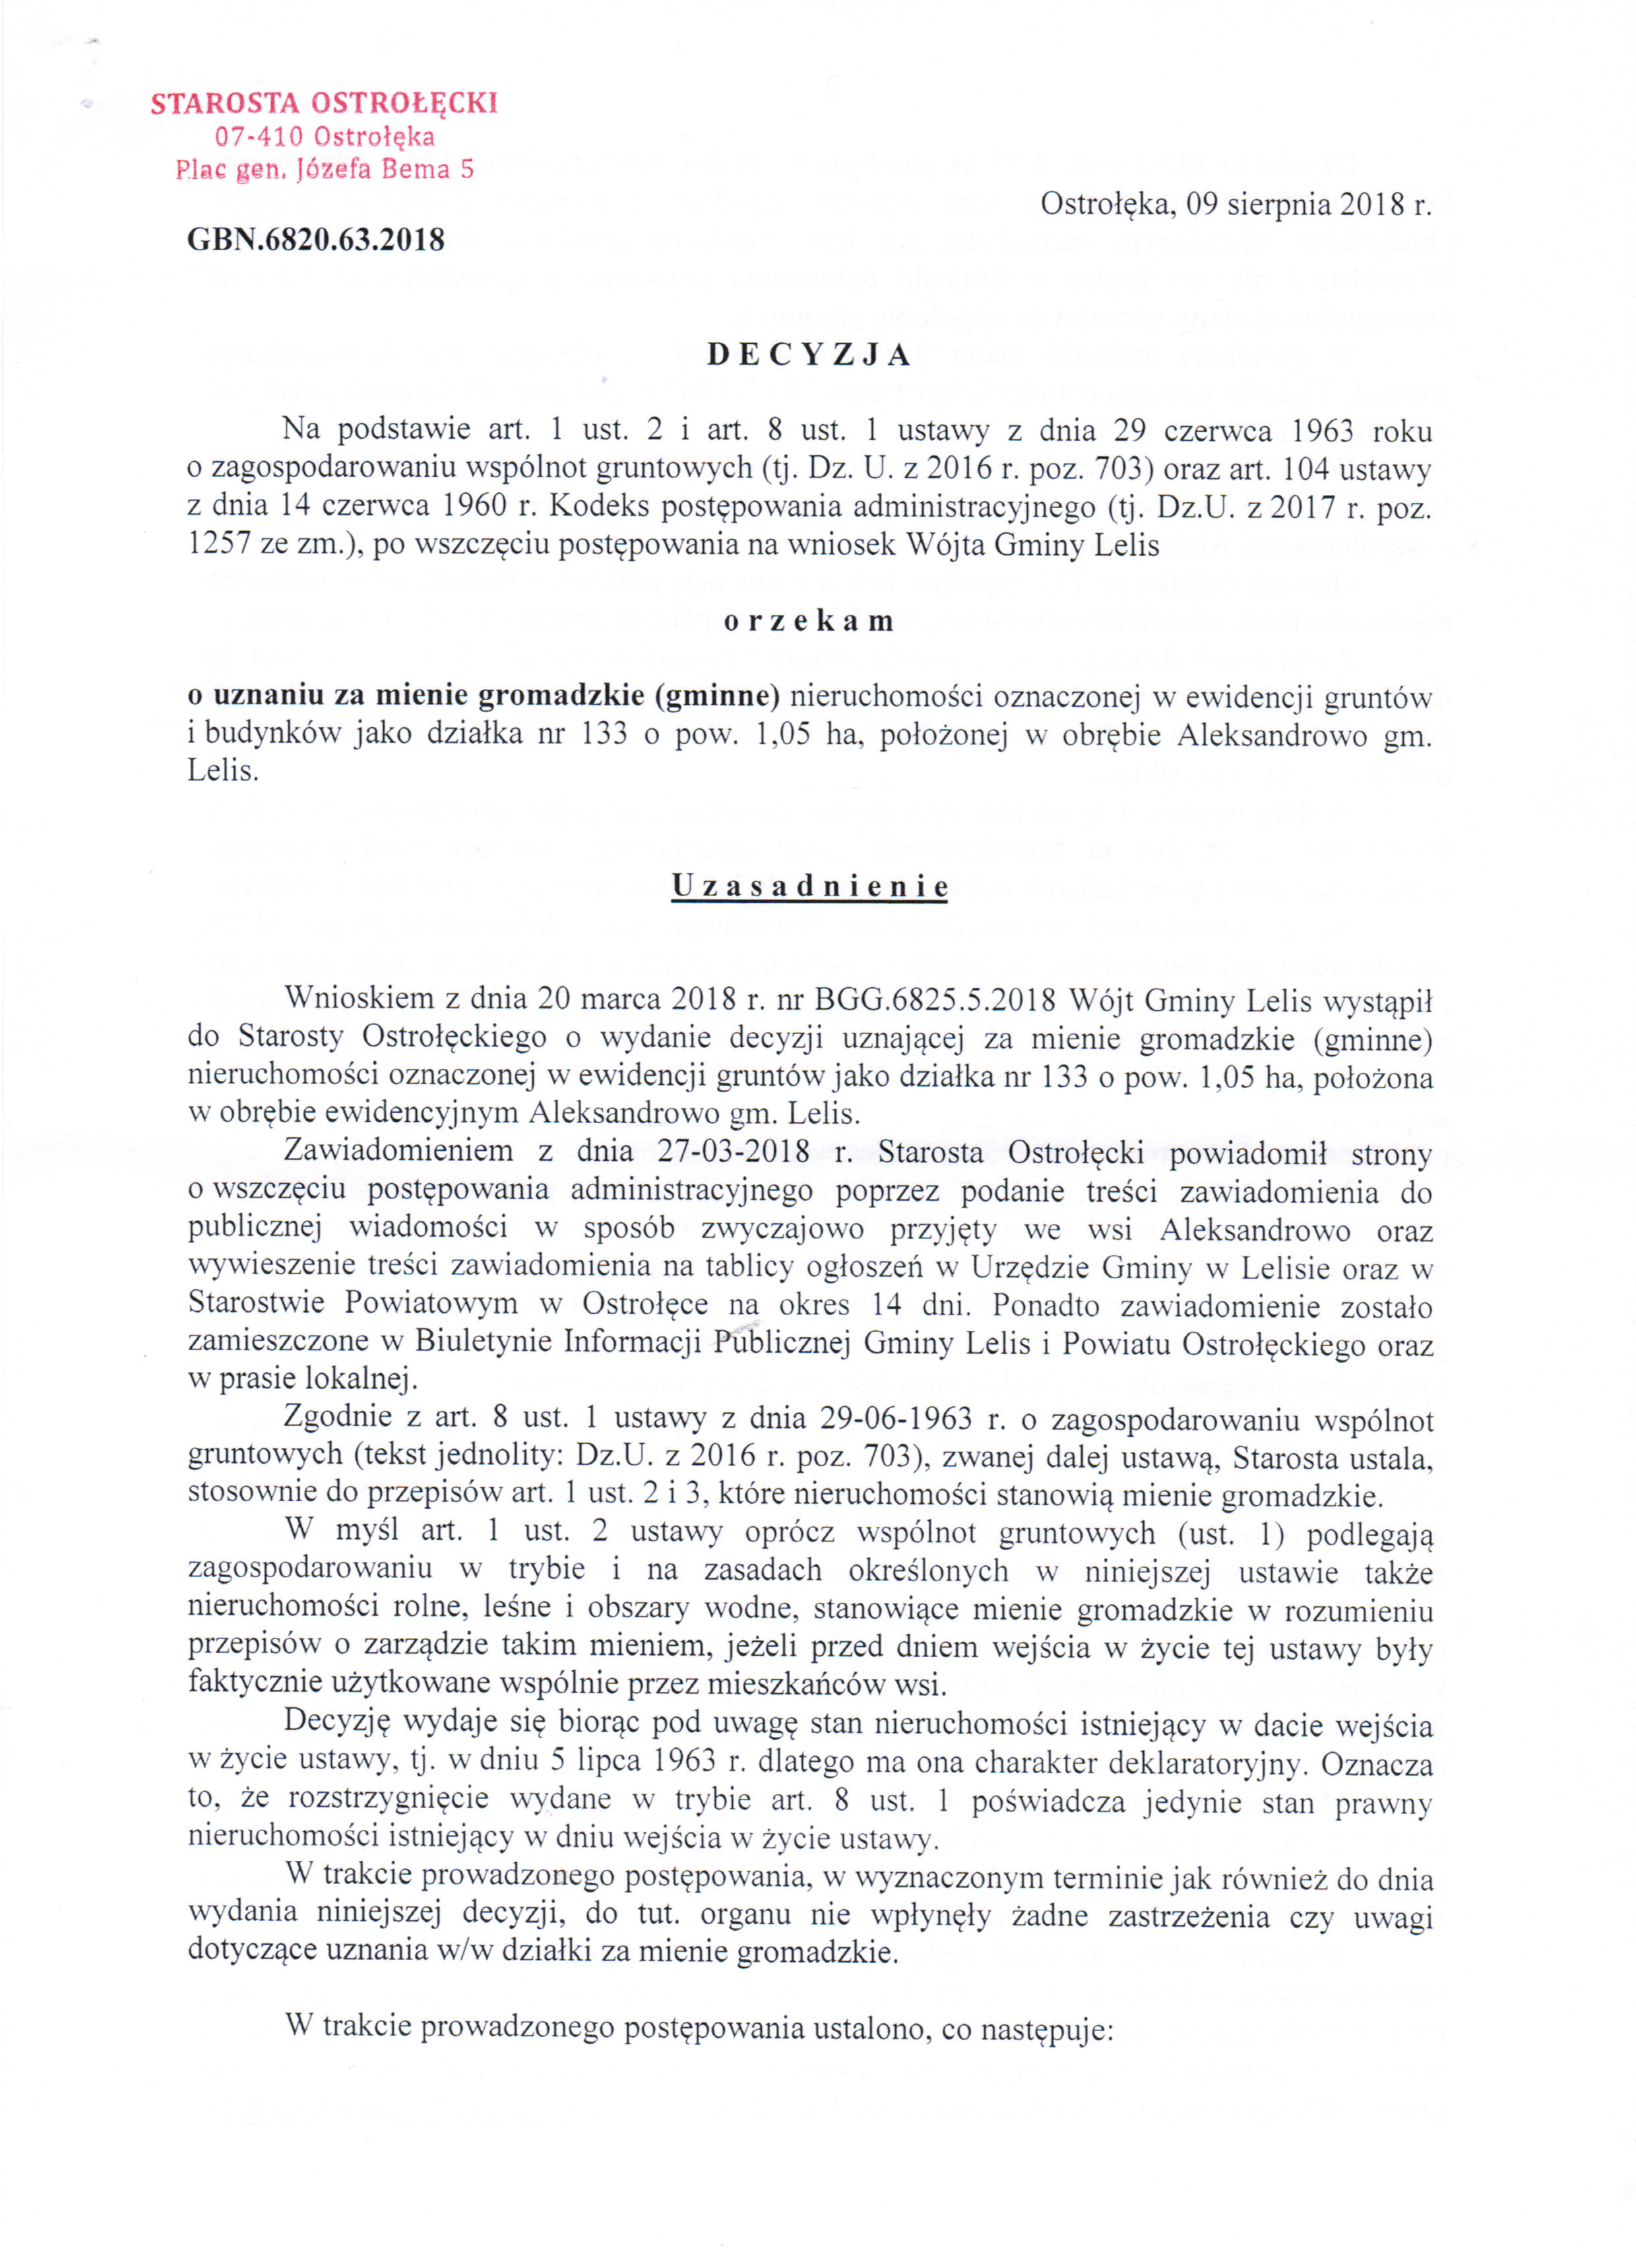 Decyzja o uznanie działki nr 133 za mienie gromadzkie cz.1